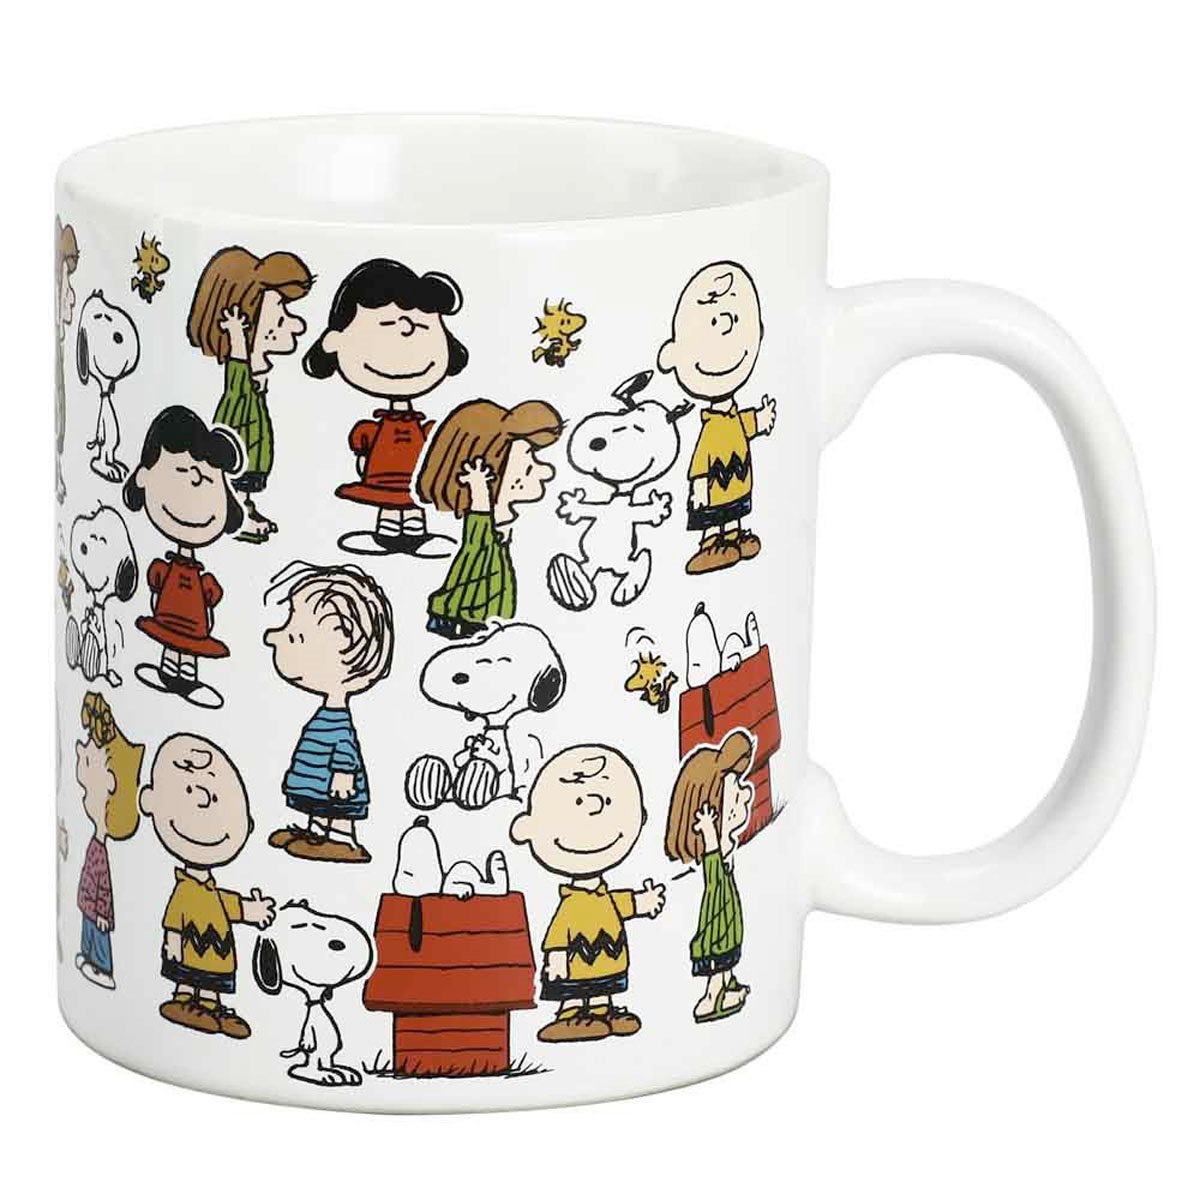 Caneca Peanuts Personagens com Charlie Brown, Snoopy e o Resto da Turma